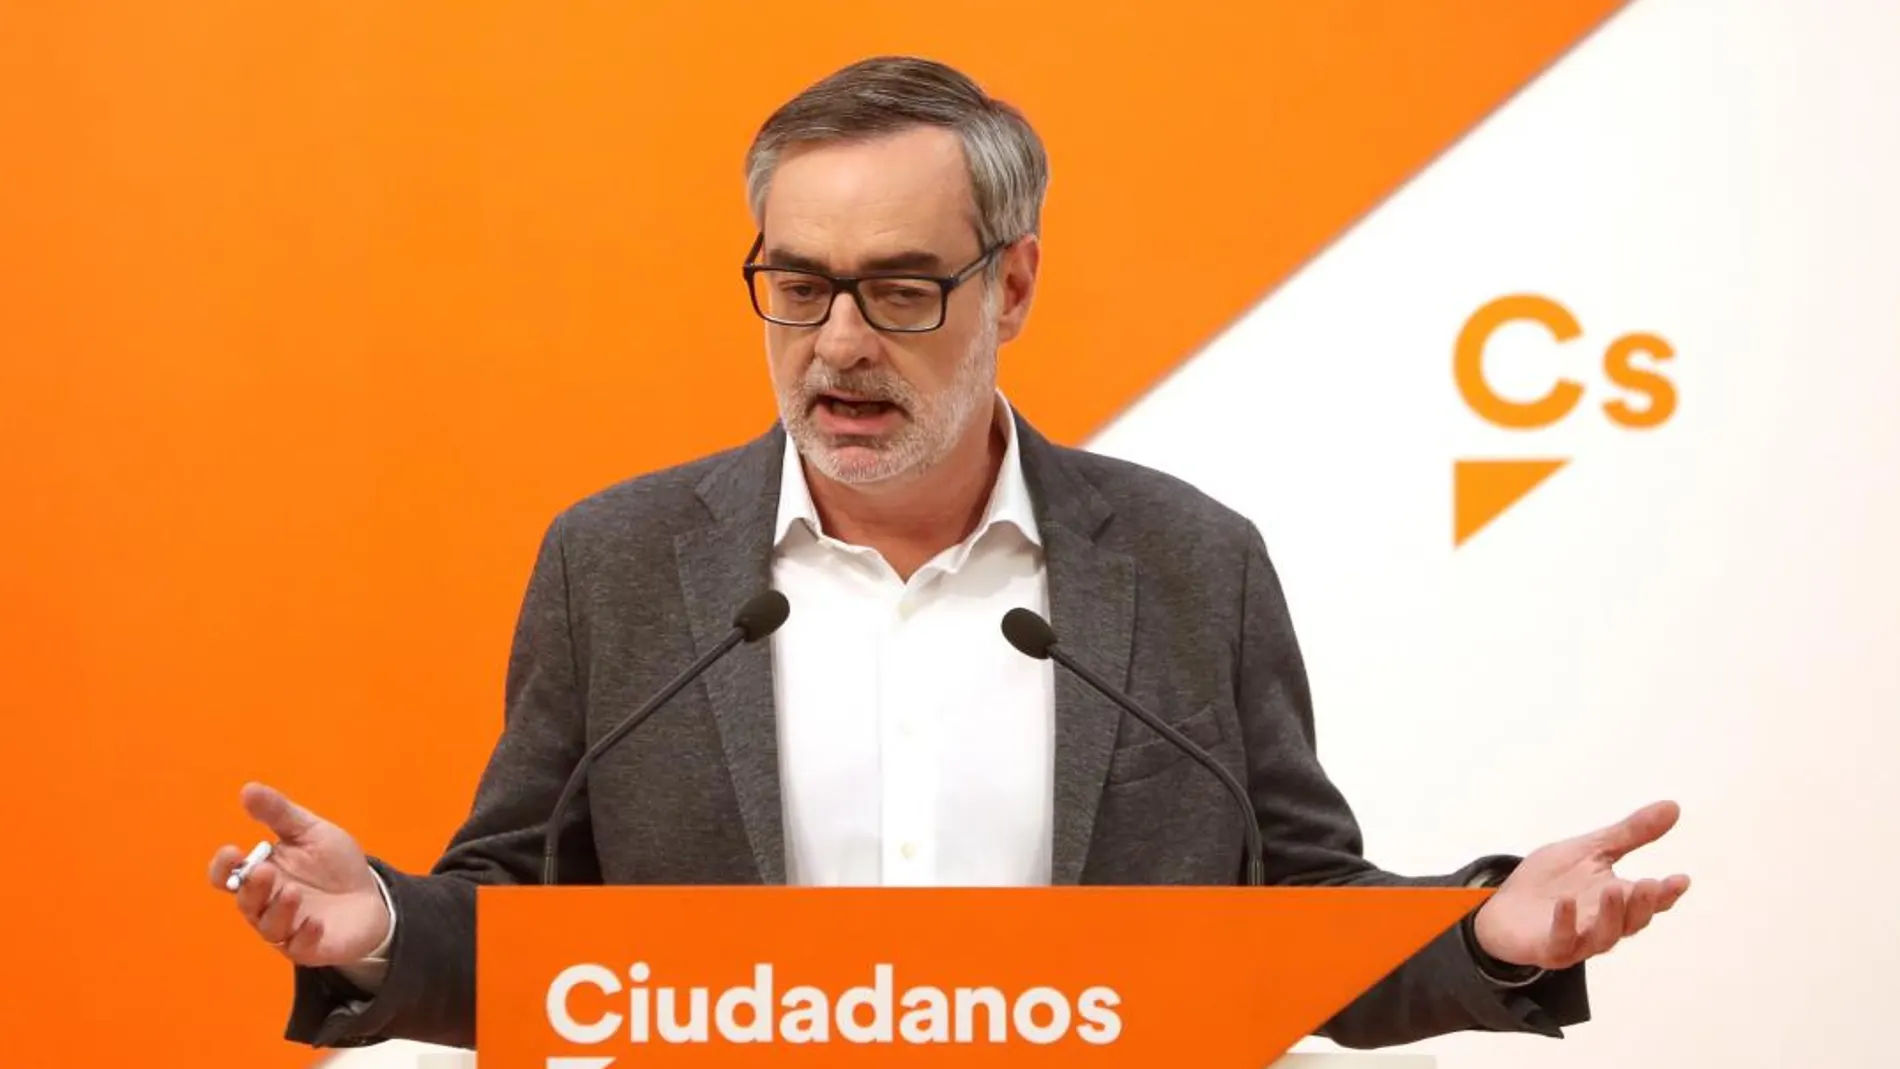 El secretario general de Ciudadanos, José Manuel Villegas, en rueda de prensa en la sede del partido